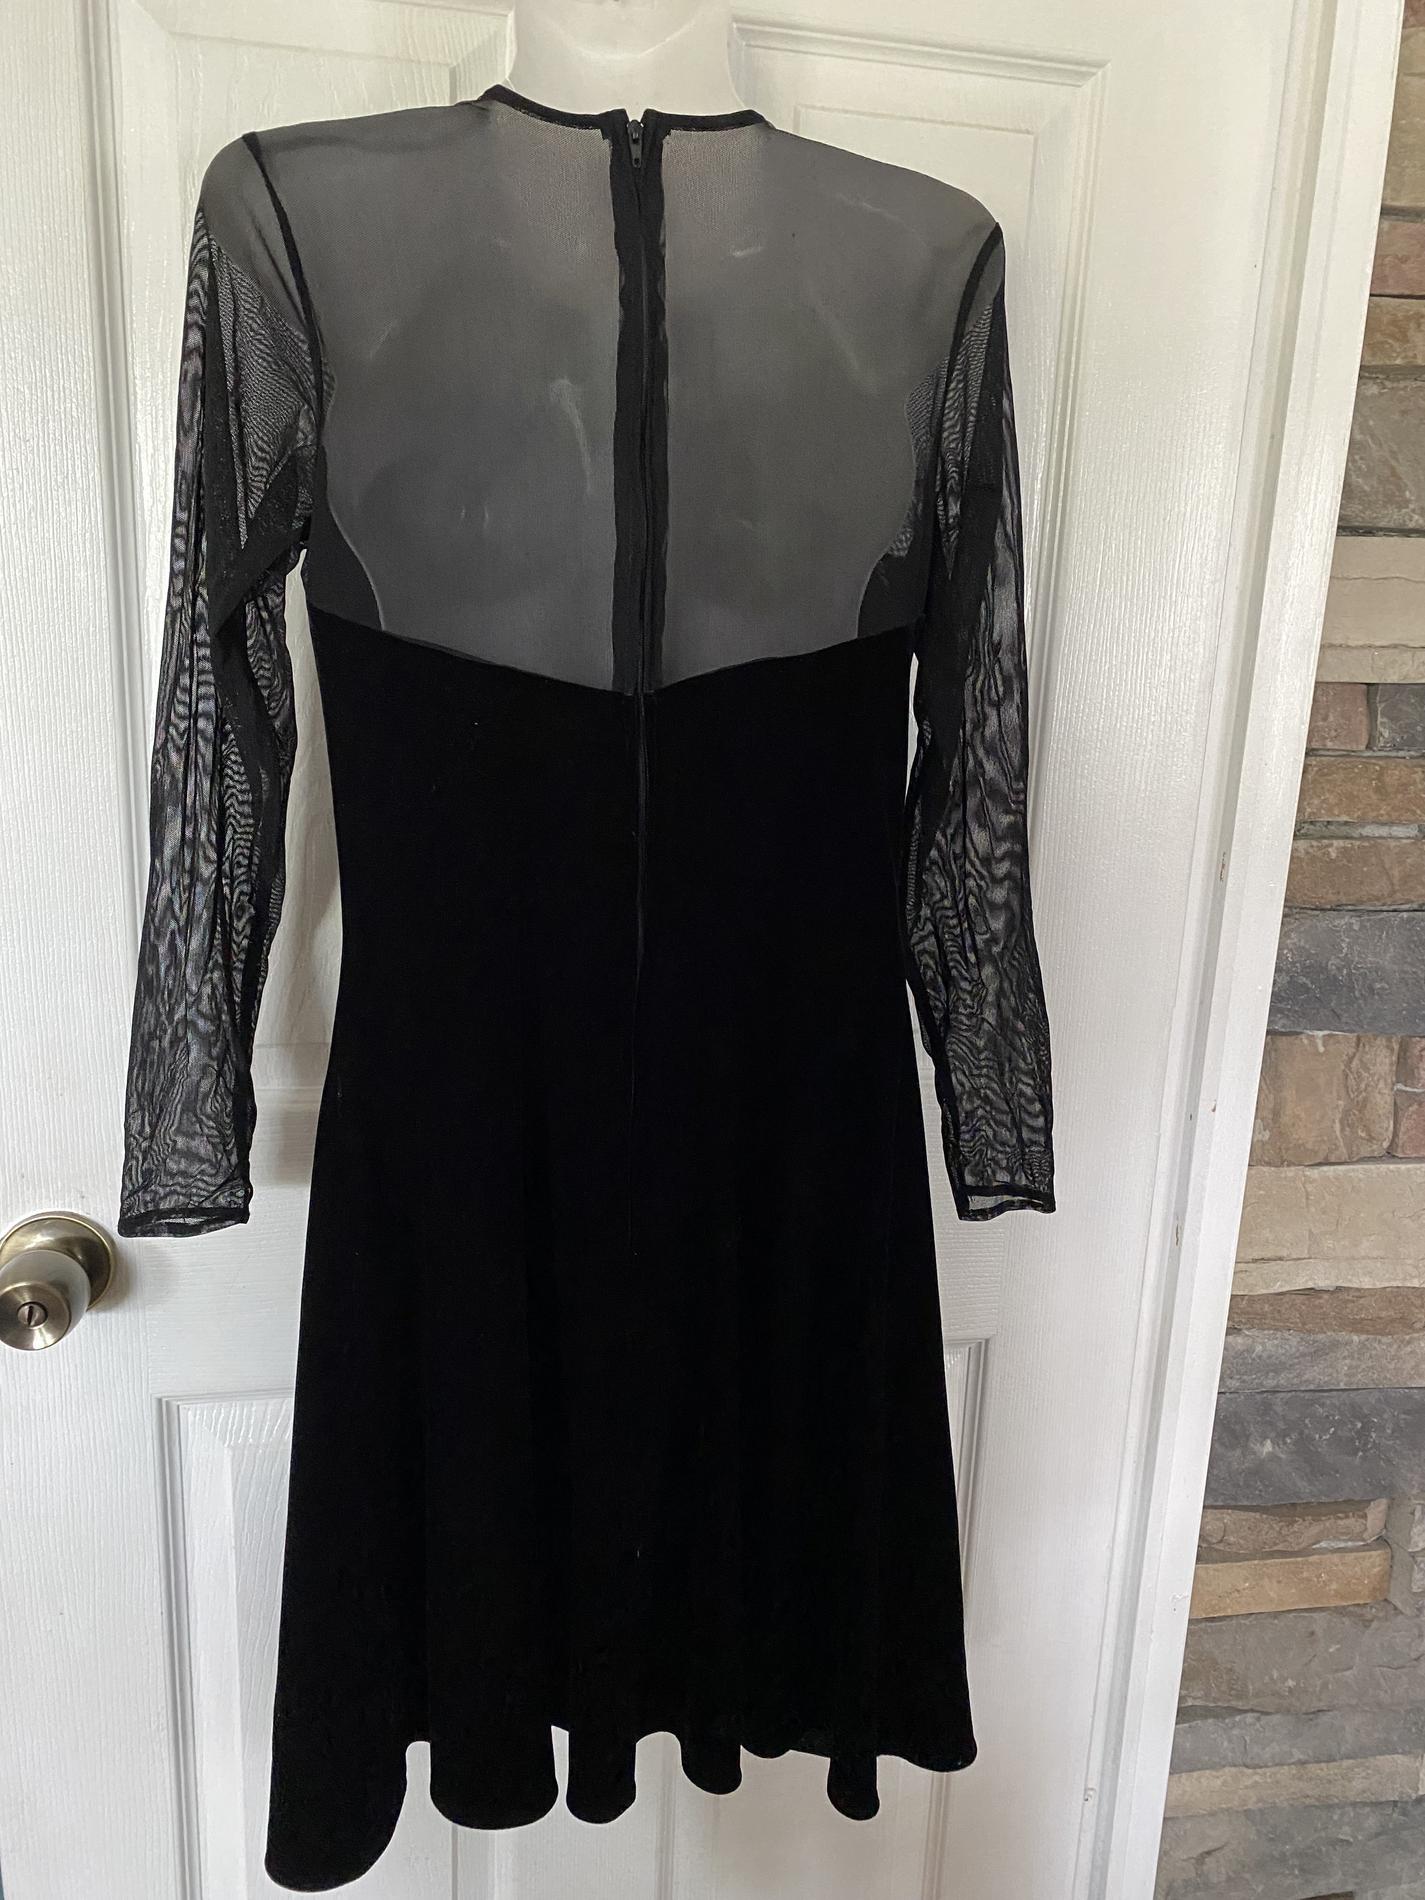 Niki by Niki Livas Size 10 Velvet Black A-line Dress on Queenly